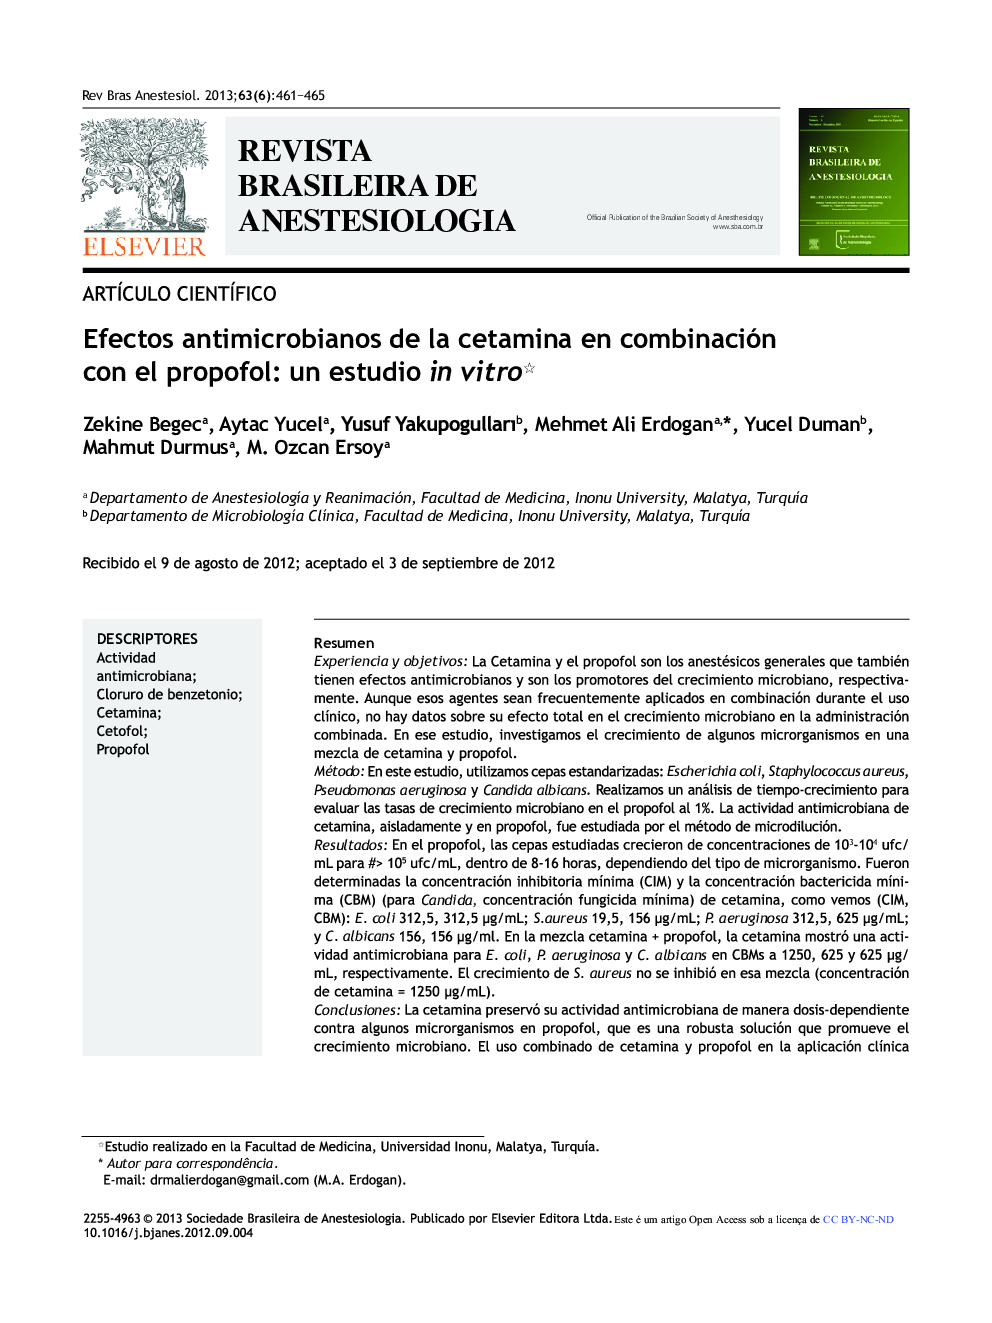 Efectos antimicrobianos de la cetamina en combinación con el propofol: Un estudio in vitro 